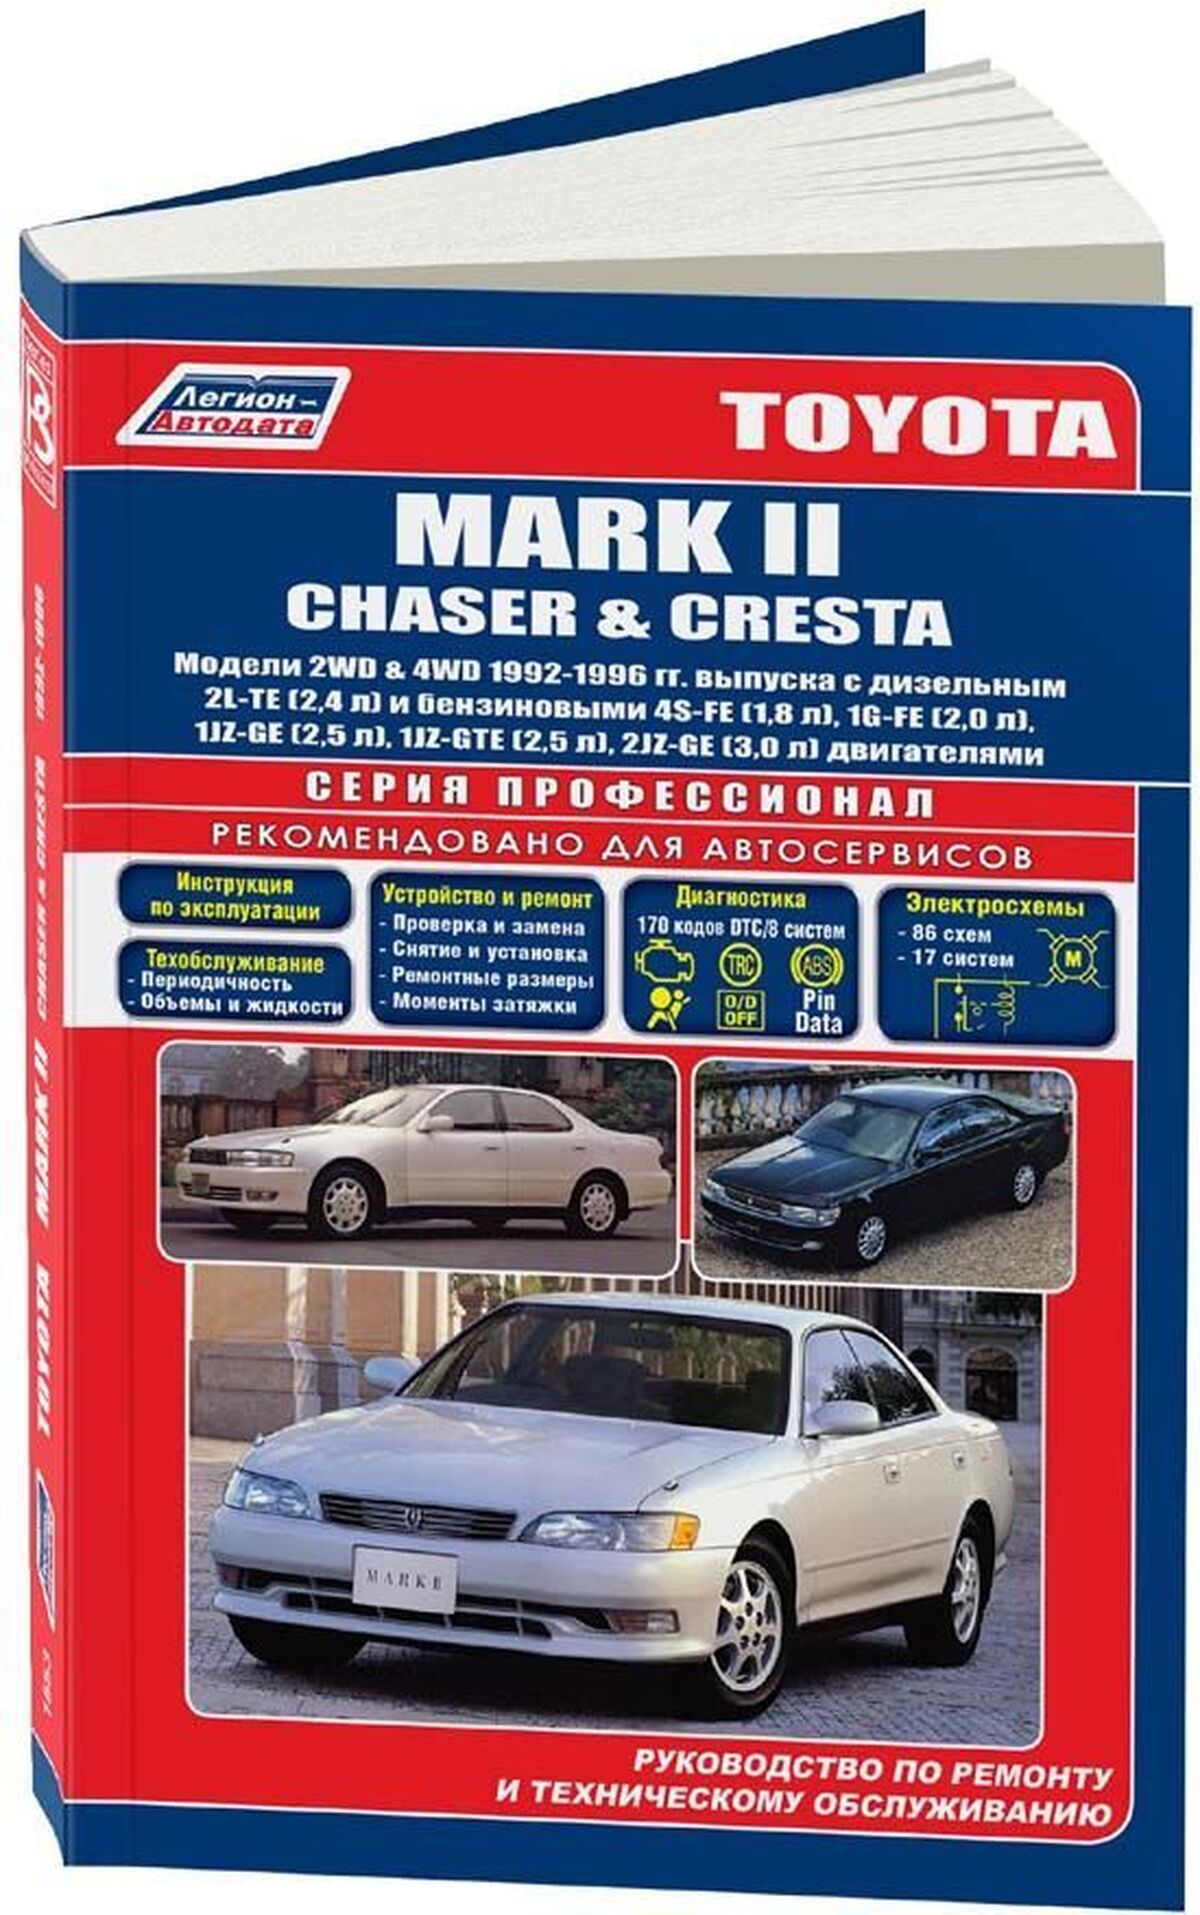 Книга: TOYOTA MARK II / CHASER / CRESTA 2WD и 4WD (б , д) 1992-1996 г.в., рем., экспл., то | Легион-Aвтодата